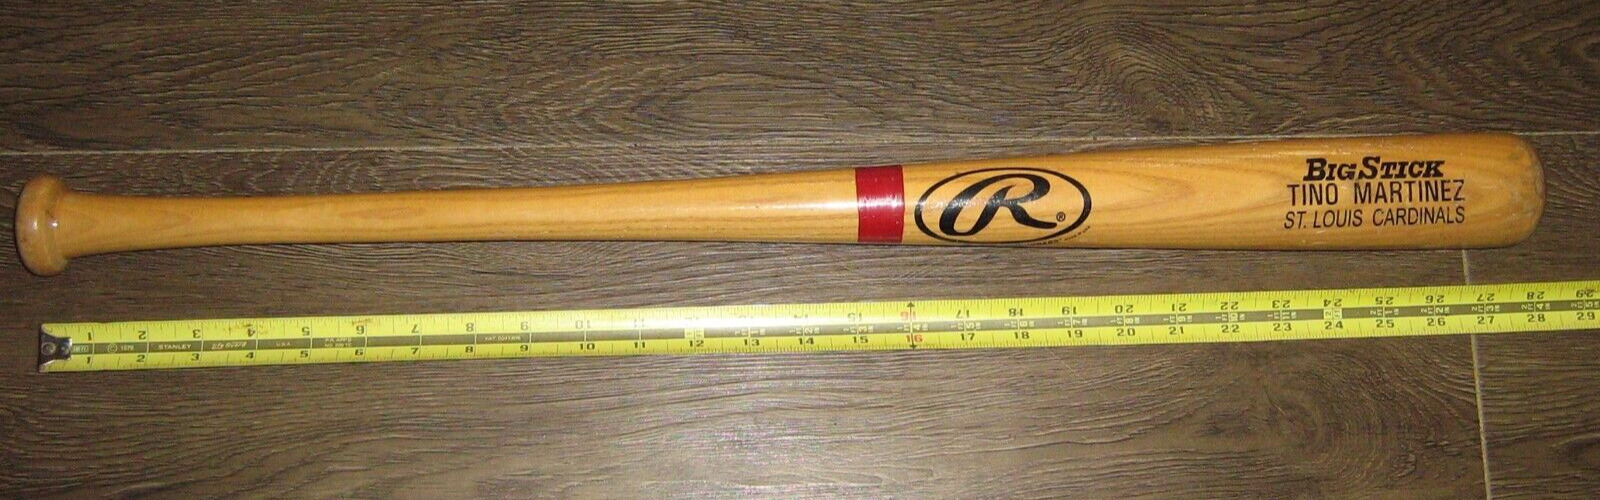 Rawlings Tino Martinez Big Stick 27” Baseball Bat Promotional Hand Out